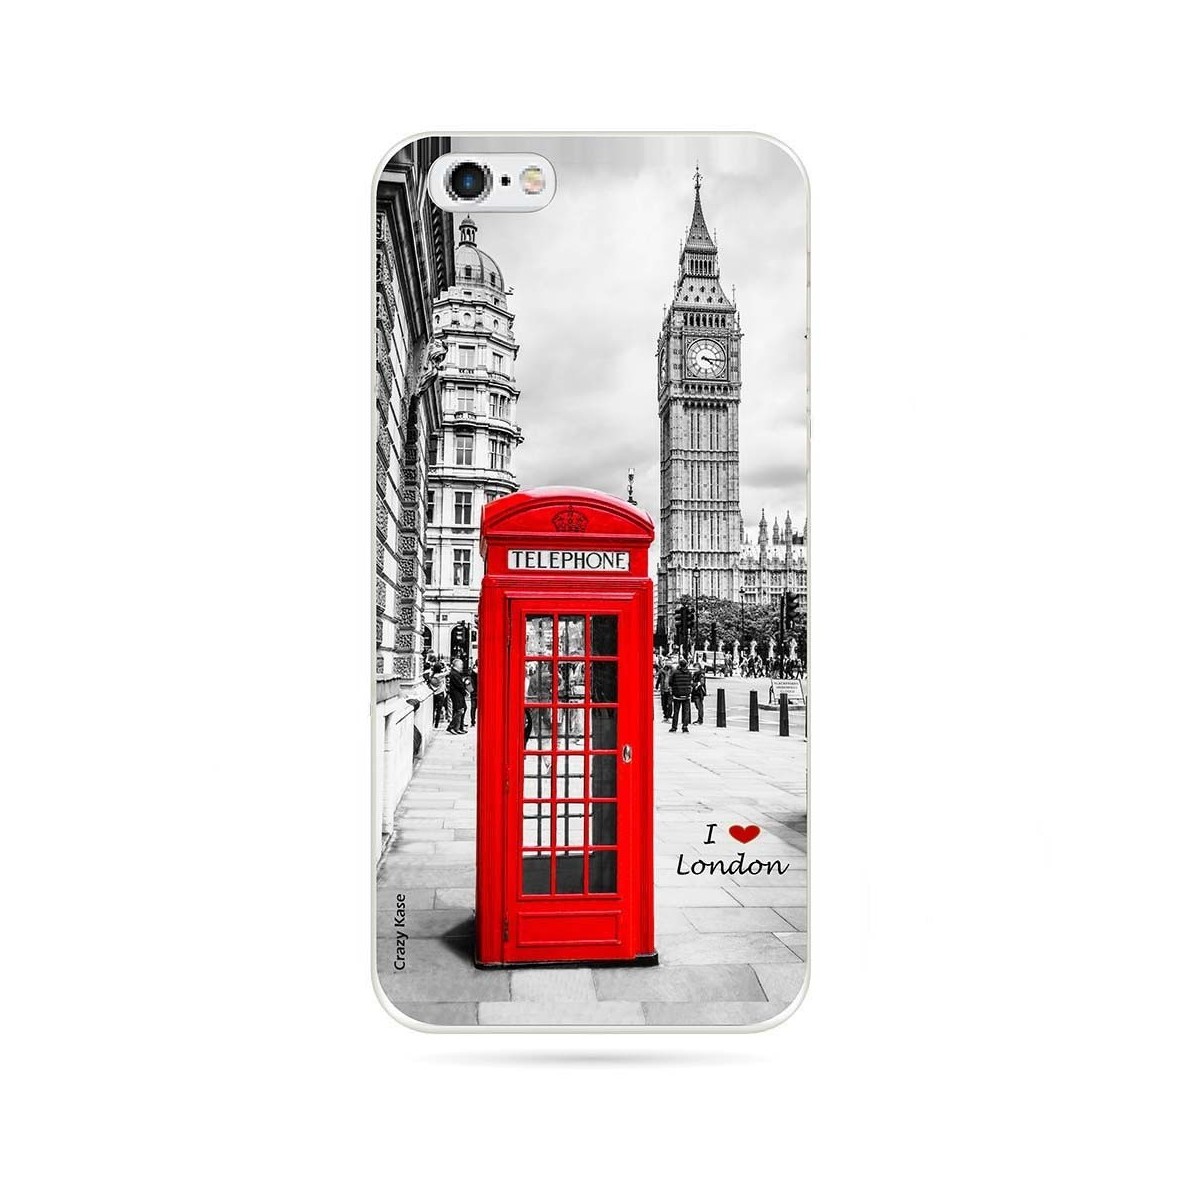 Coque iPhone 6 / 6s souple motif Londres - Crazy Kase